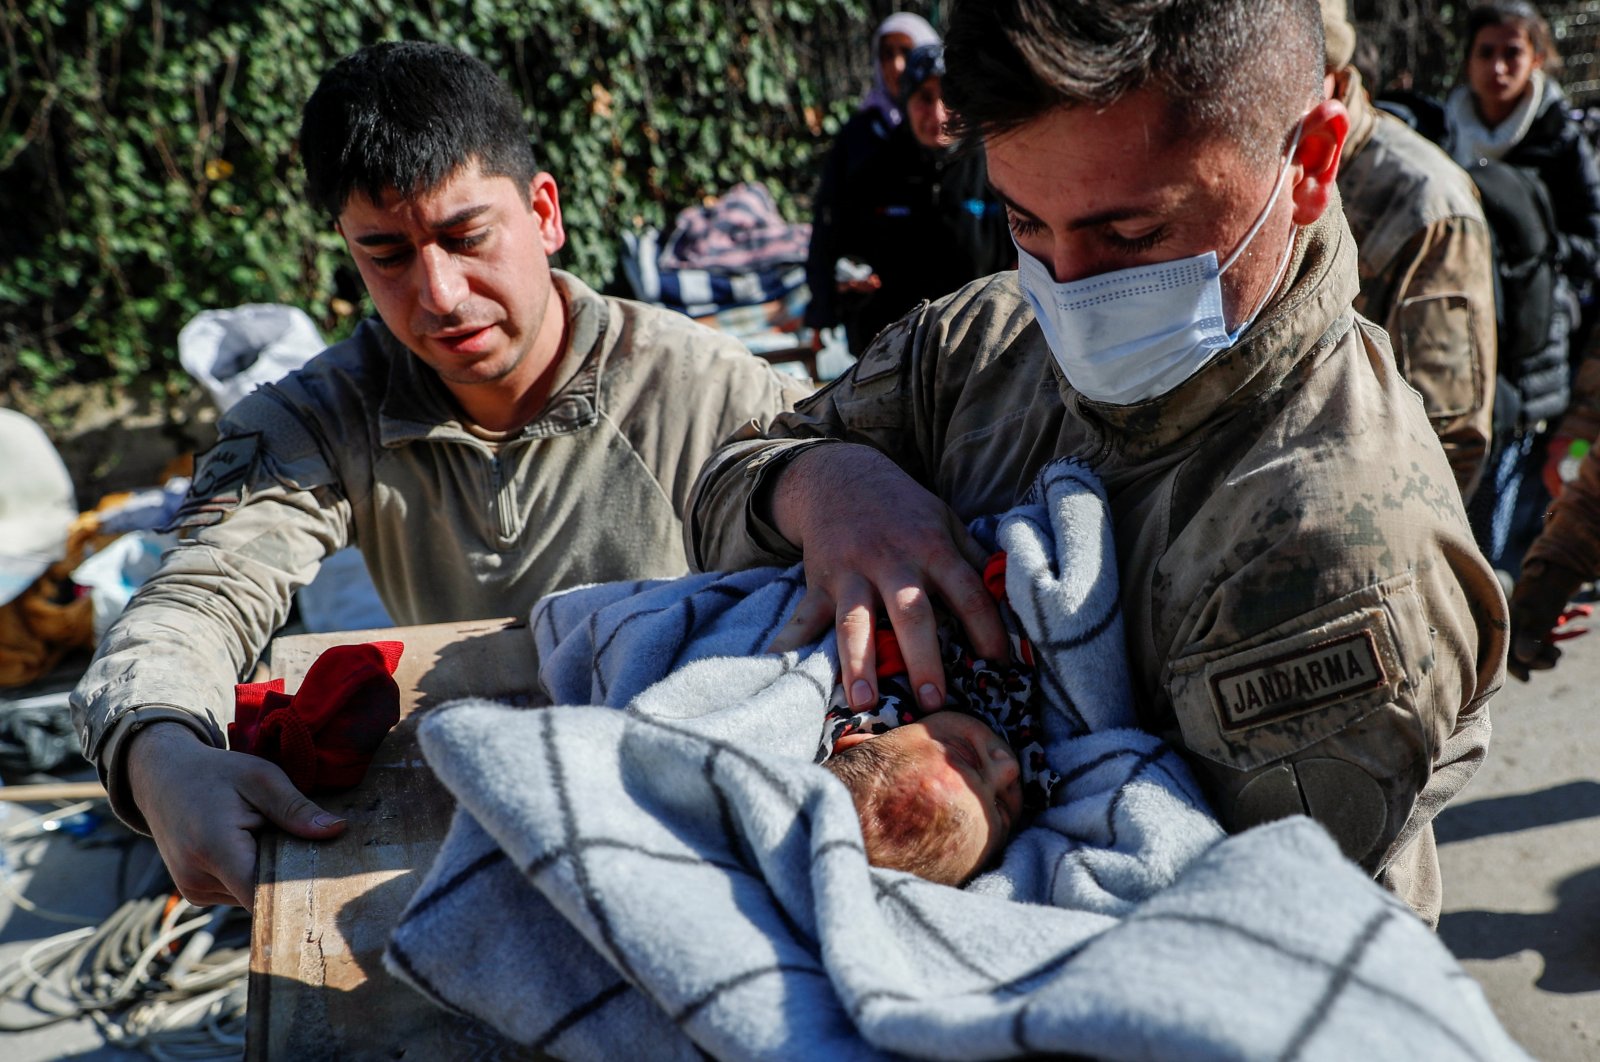 Bayi bertahan berhari-hari di reruntuhan, membawa kegembiraan dalam tragedi gempa